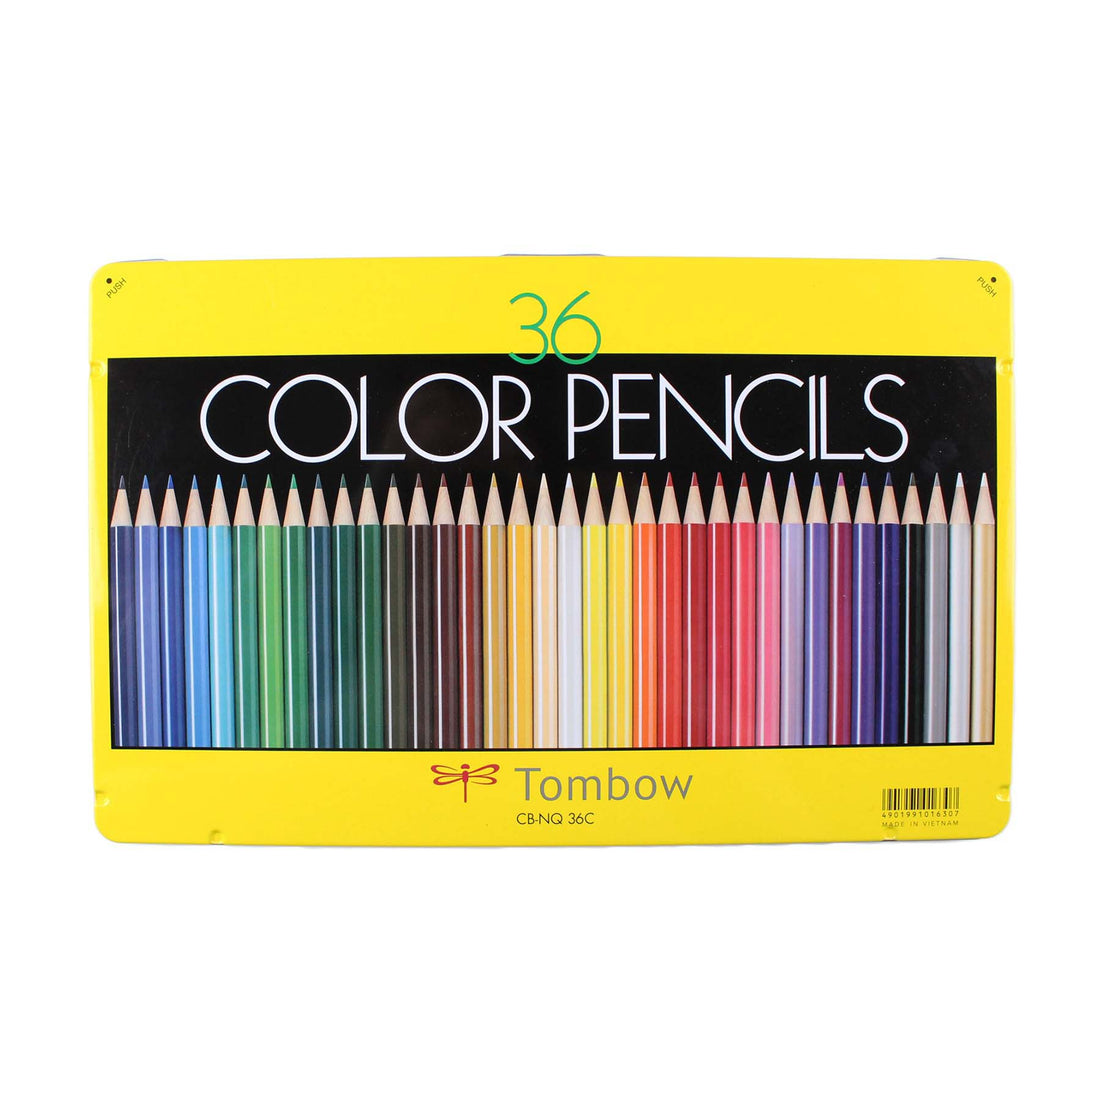 1500 Series Colored Pencils - 36PC Set - Parkette.